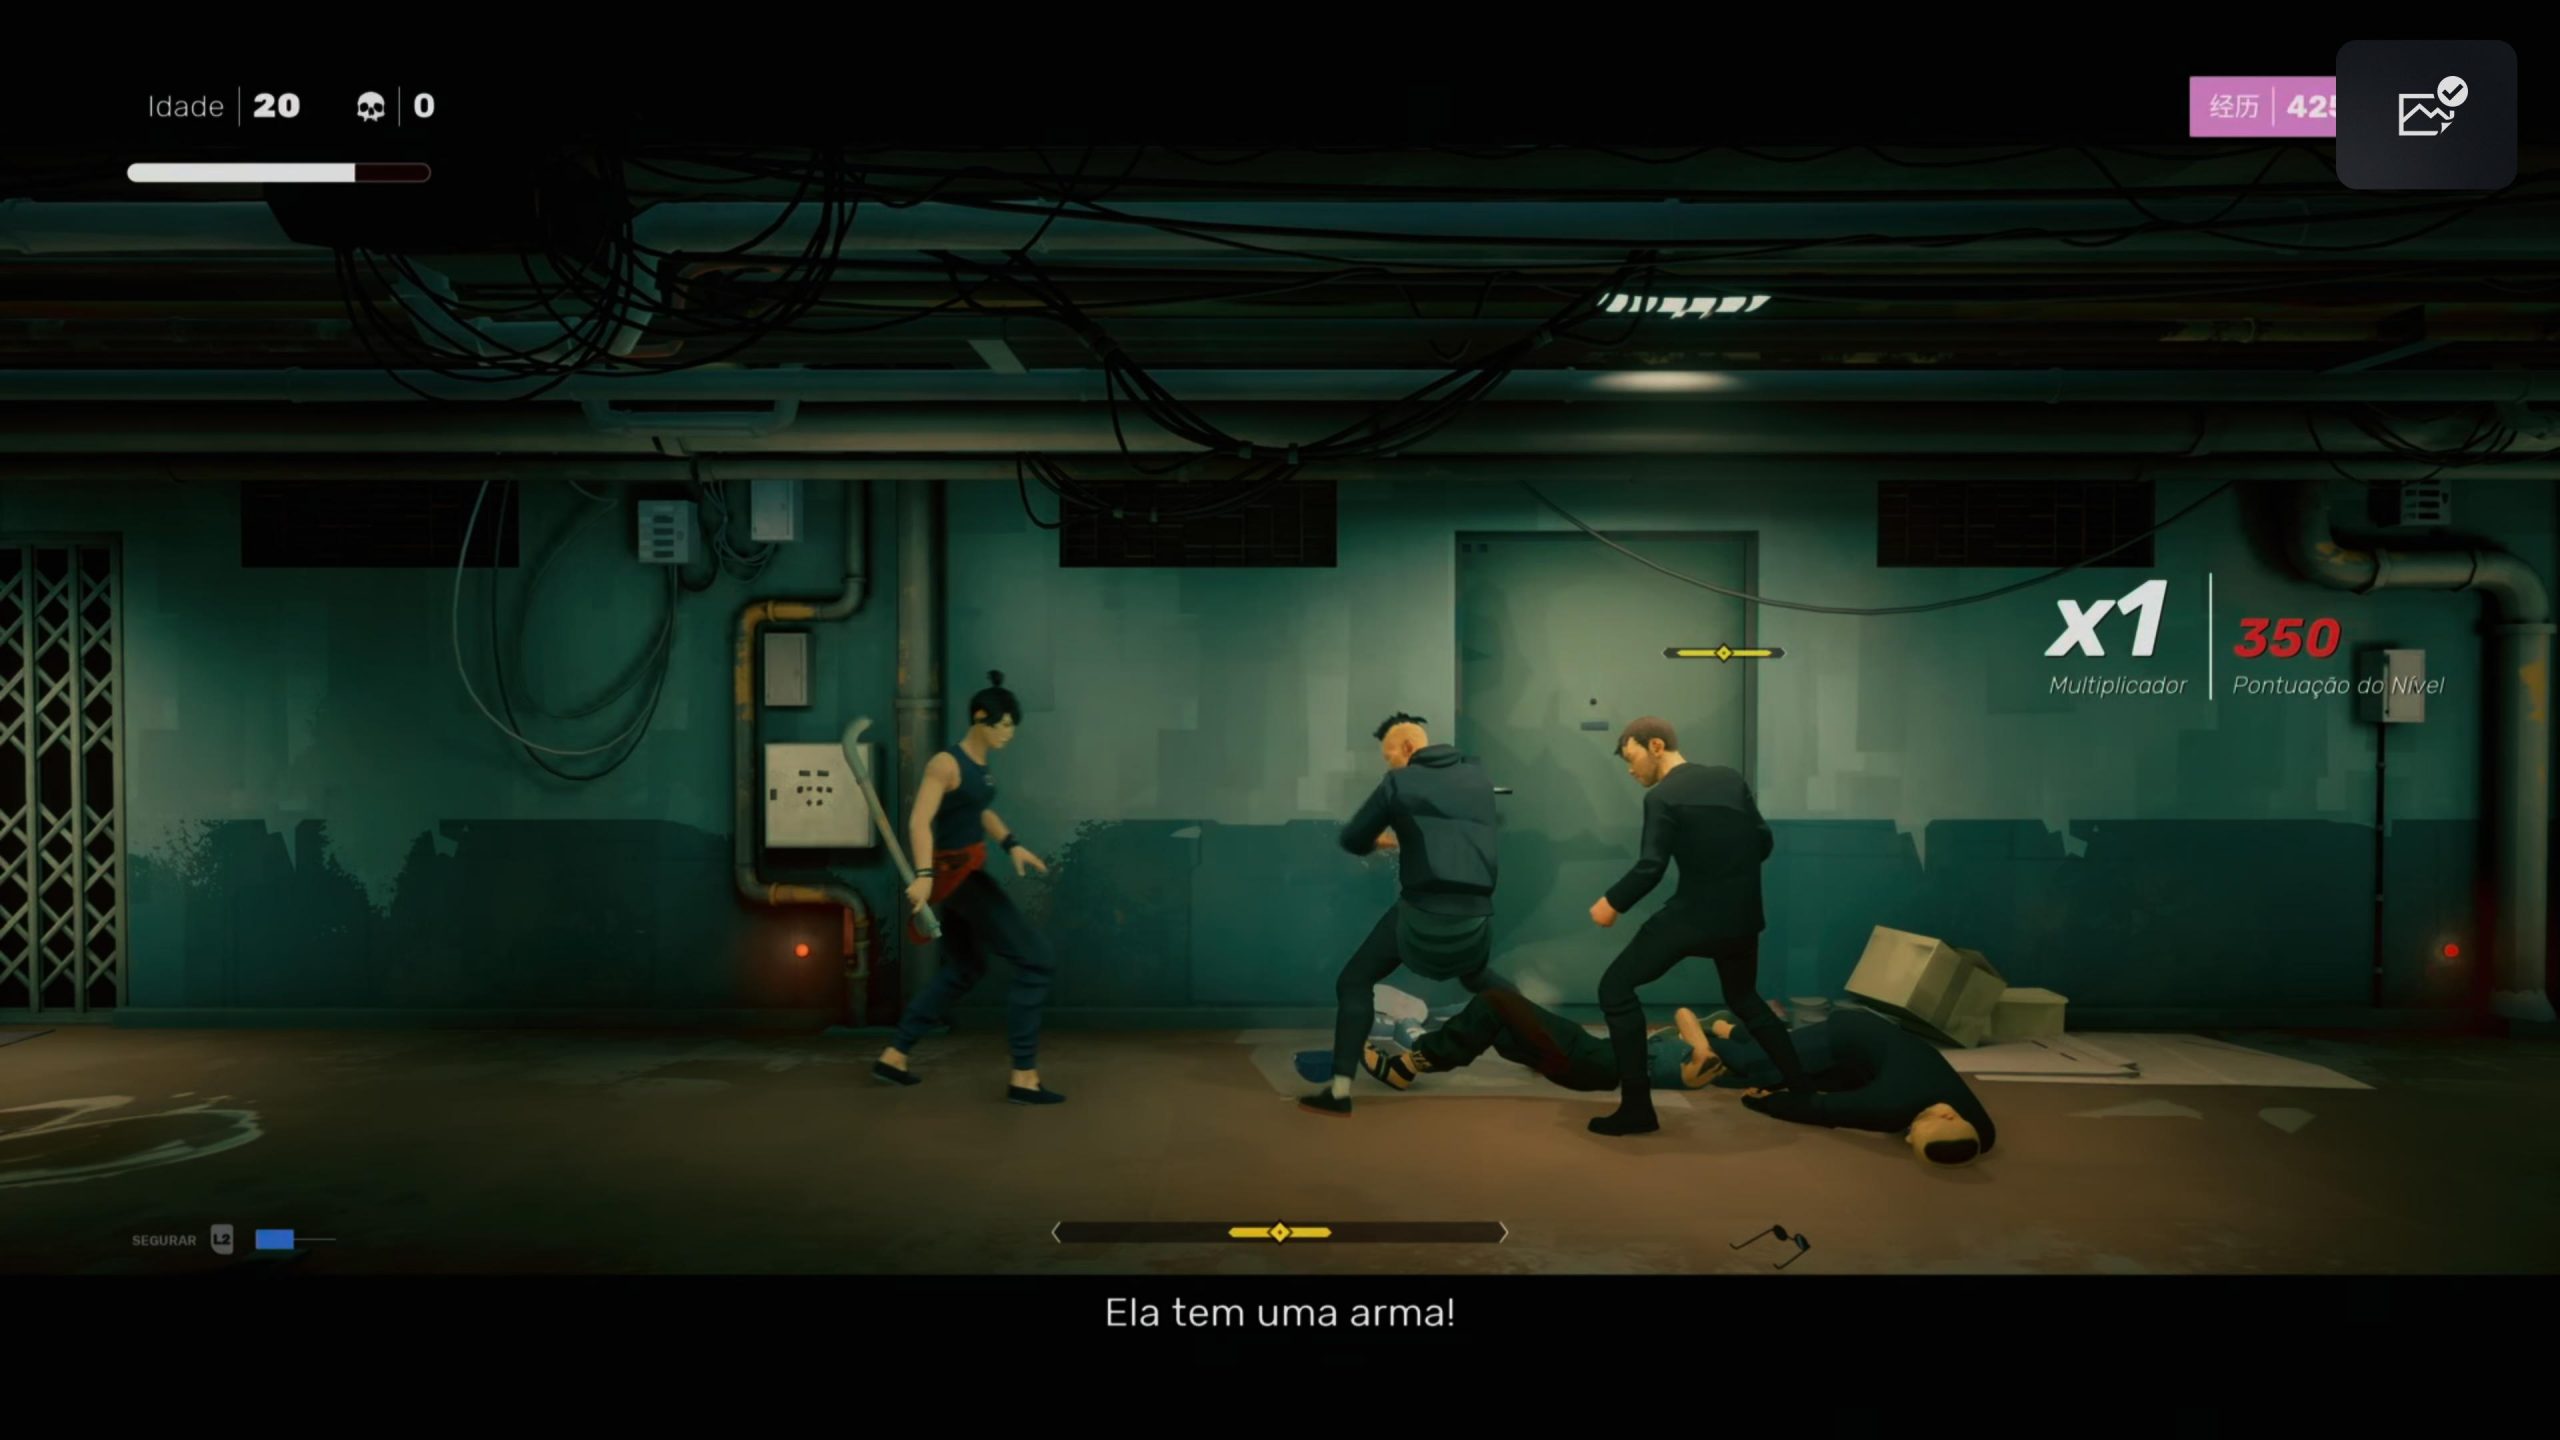 O jogo faz uma série de homenagens a jogos e outras mídias que envolveram o Kung Fu.